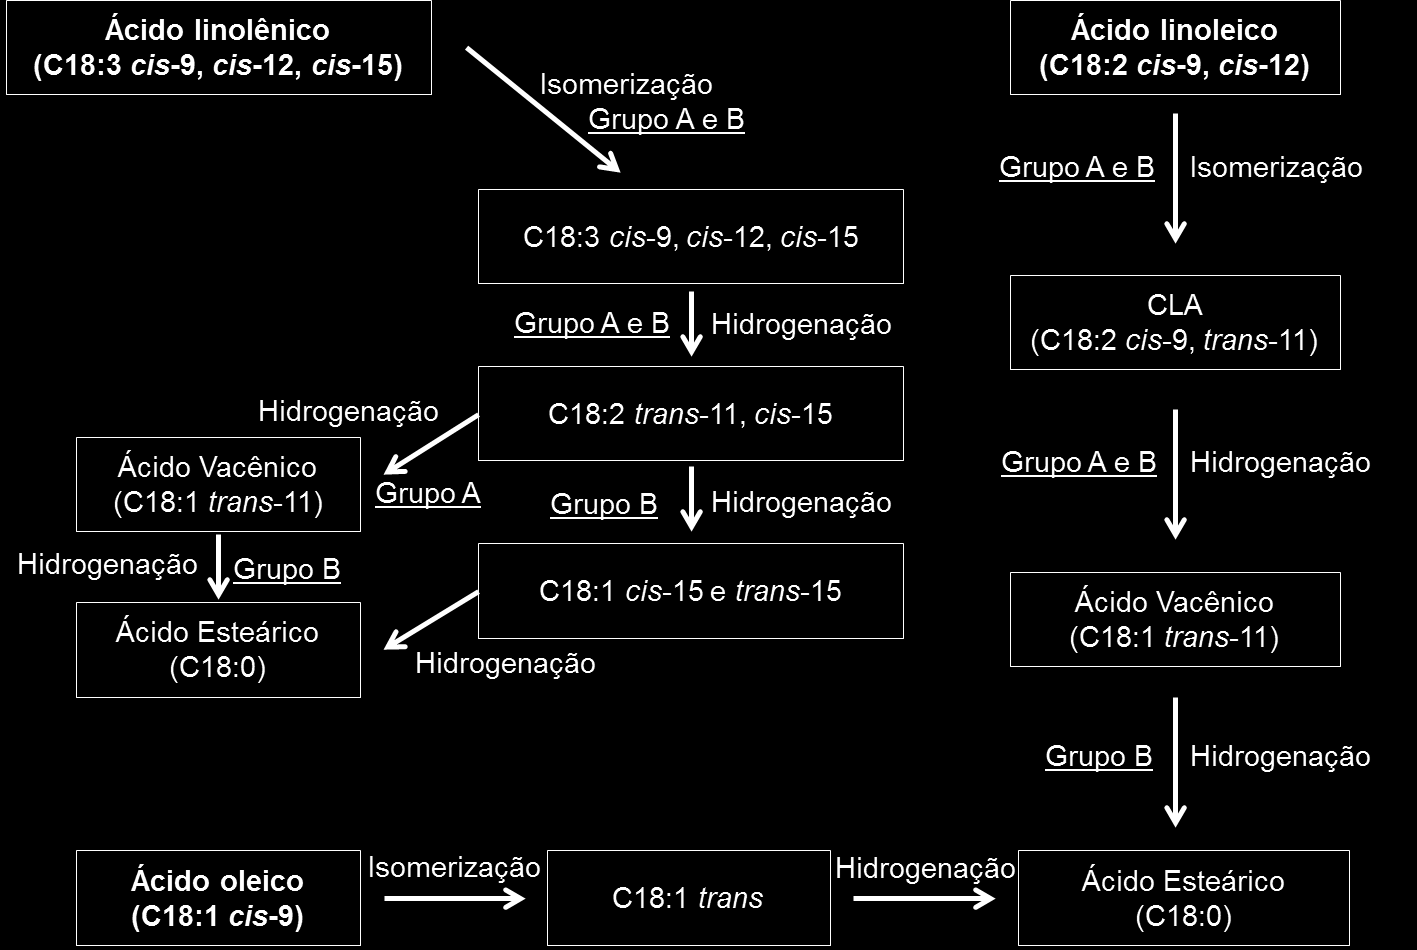 21 Após a hidrólise os ácidos graxos se tornam disponíveis para o processo de biohidrogenação, que inicia pela isomerização que converte o ácido graxo linoleico (cis-9, cis-12 dieno